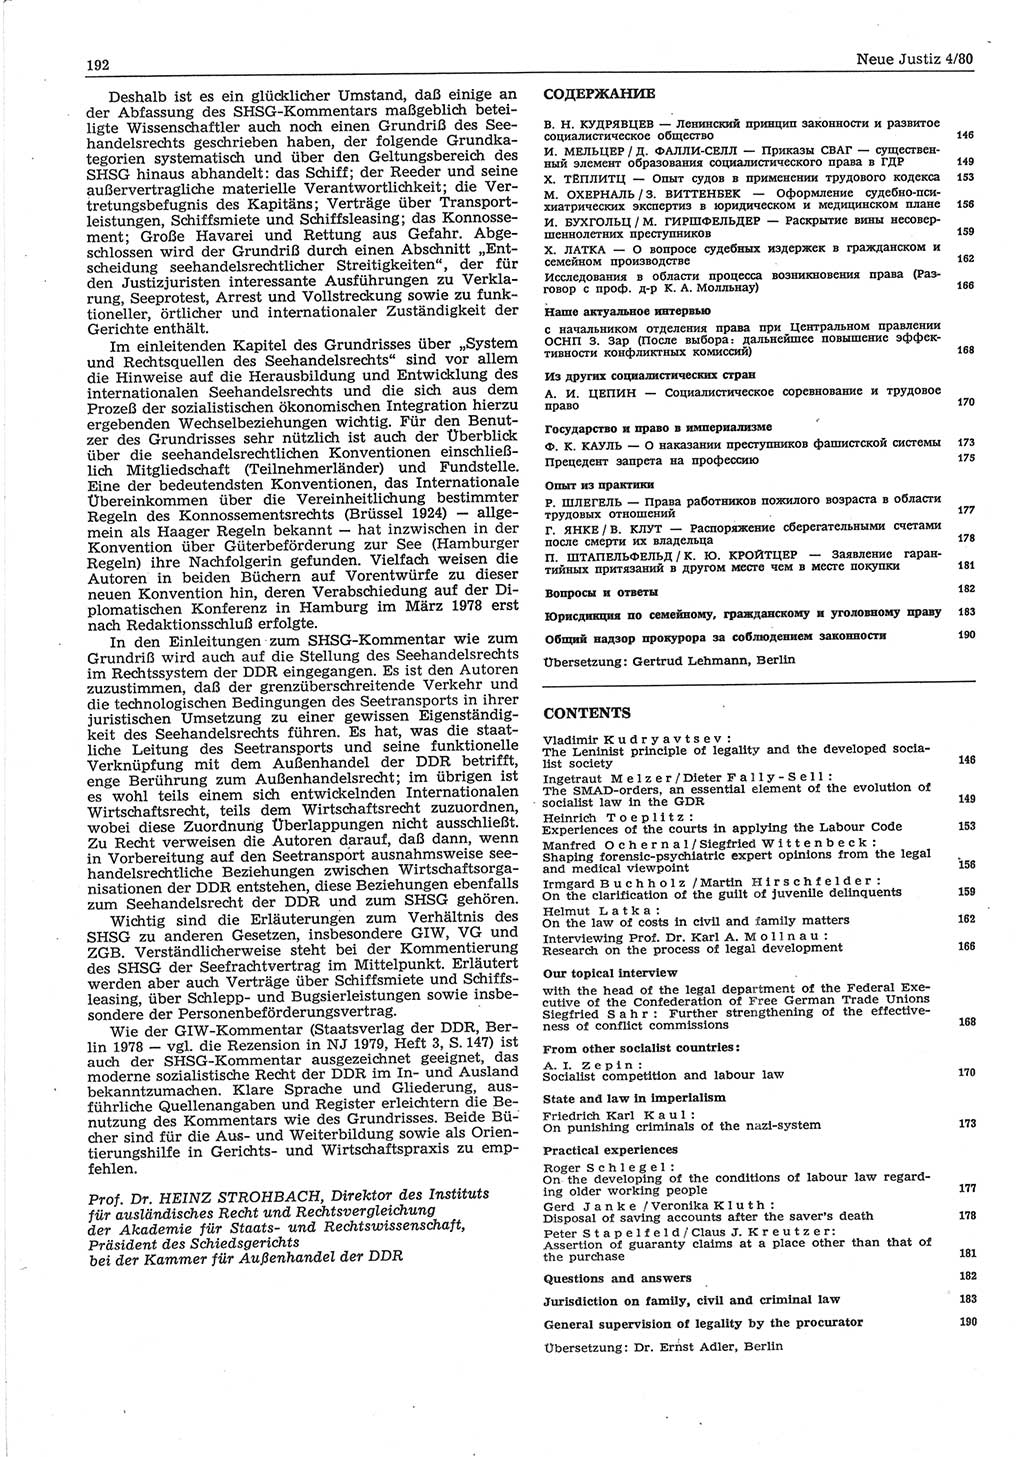 Neue Justiz (NJ), Zeitschrift für sozialistisches Recht und Gesetzlichkeit [Deutsche Demokratische Republik (DDR)], 34. Jahrgang 1980, Seite 192 (NJ DDR 1980, S. 192)